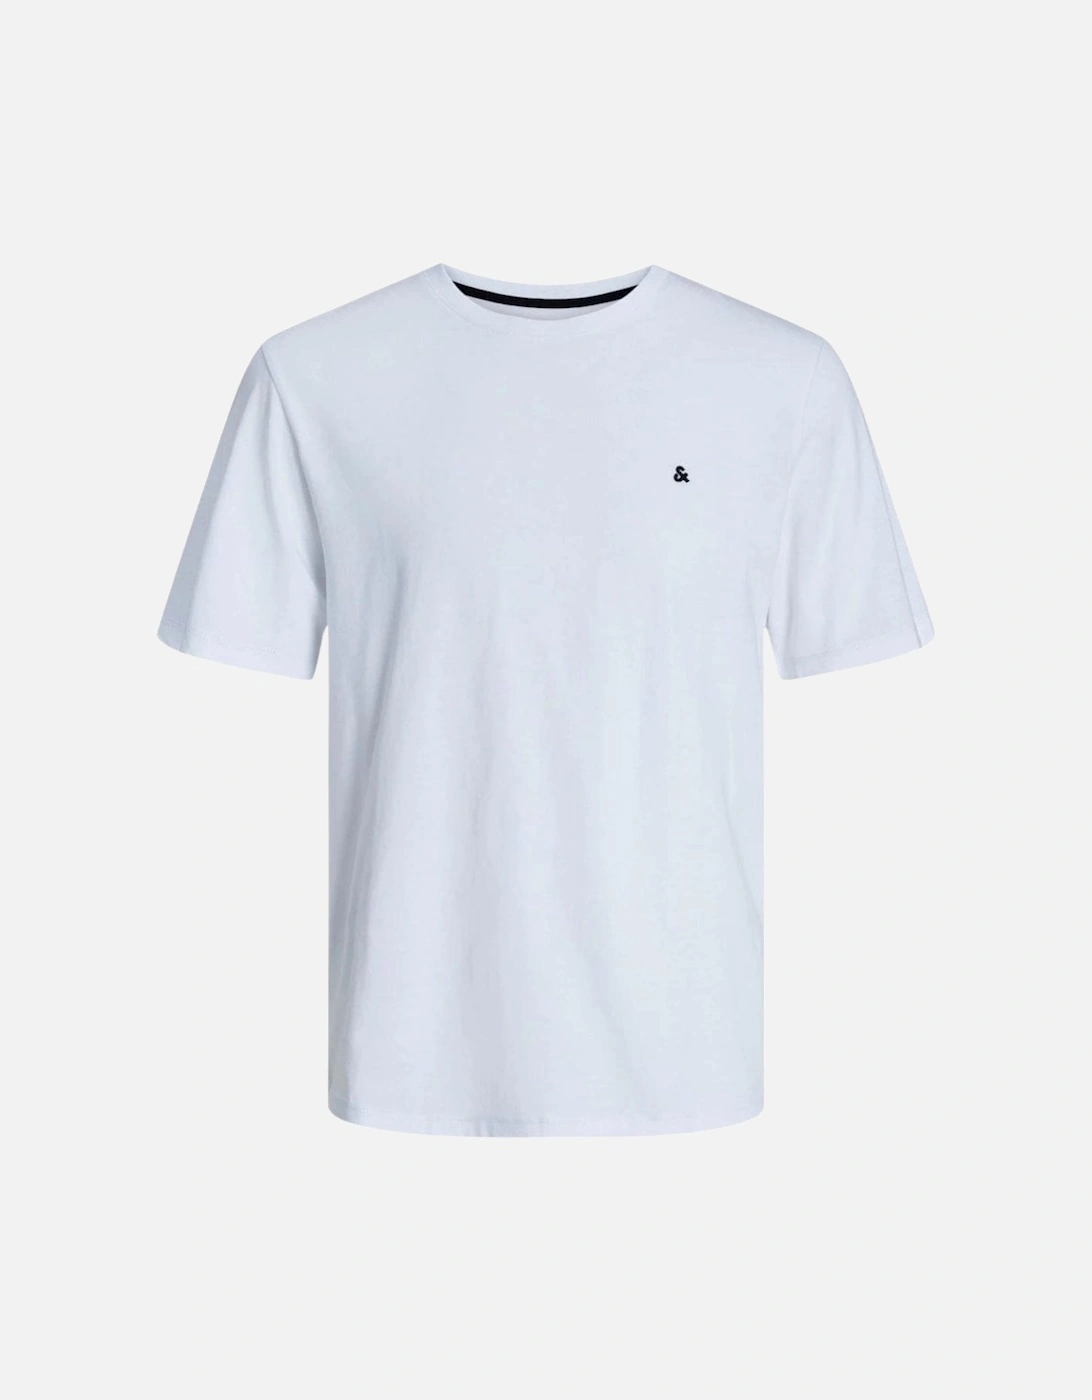 Paulos Crew Neck T-shirt - White, 8 of 7